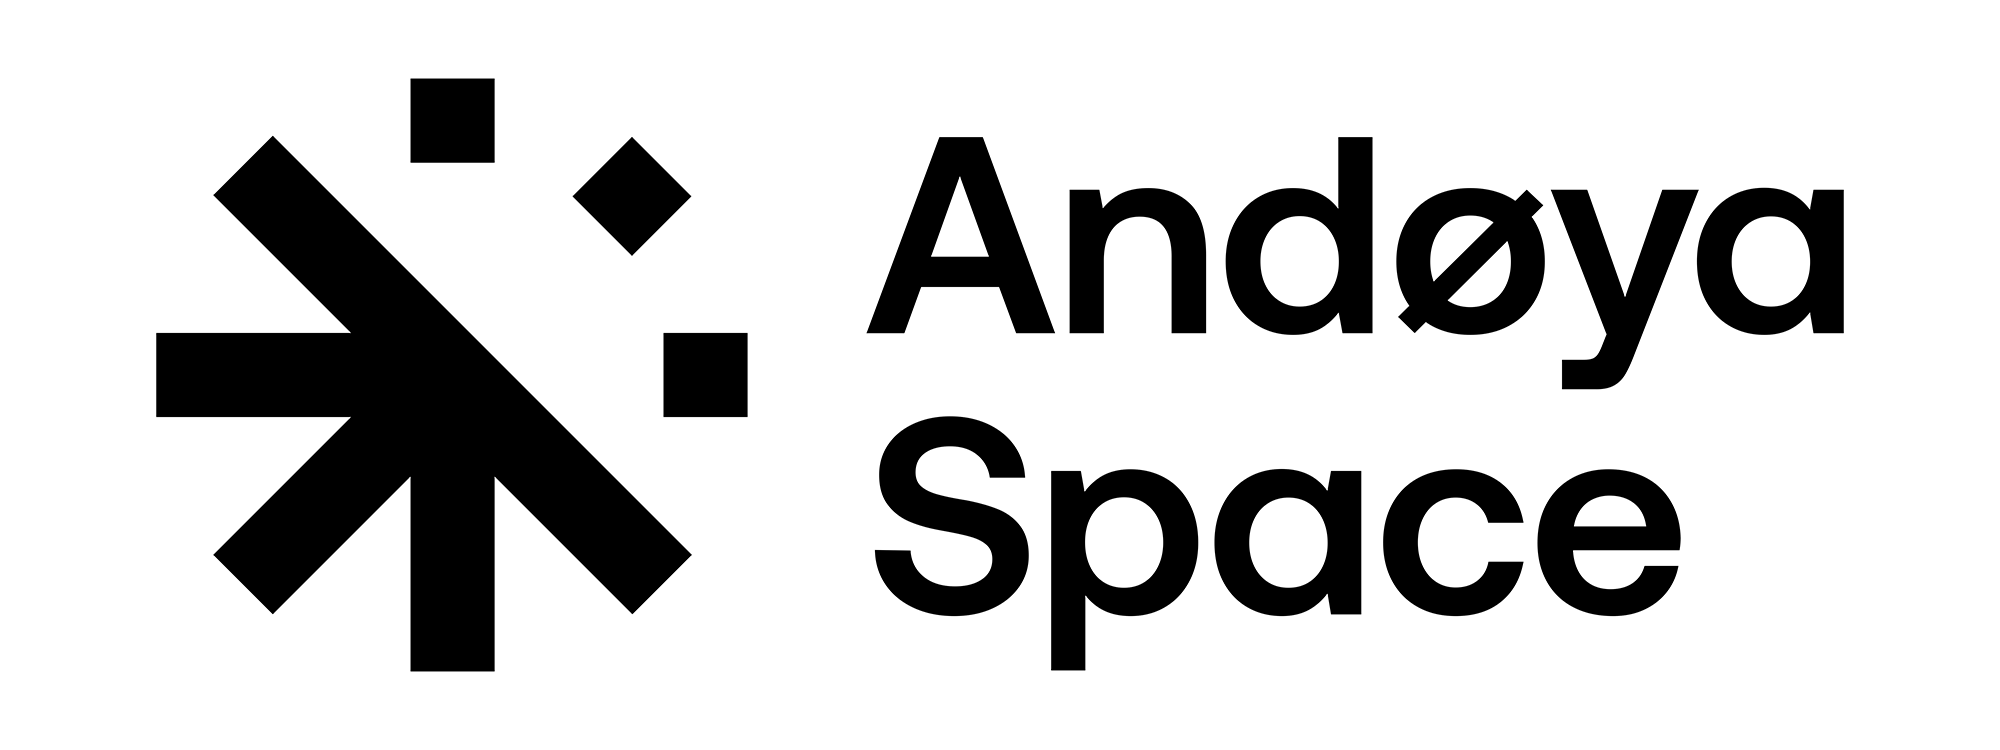 Andoya-Ruimte-Logo-2k-zwart-transparant2